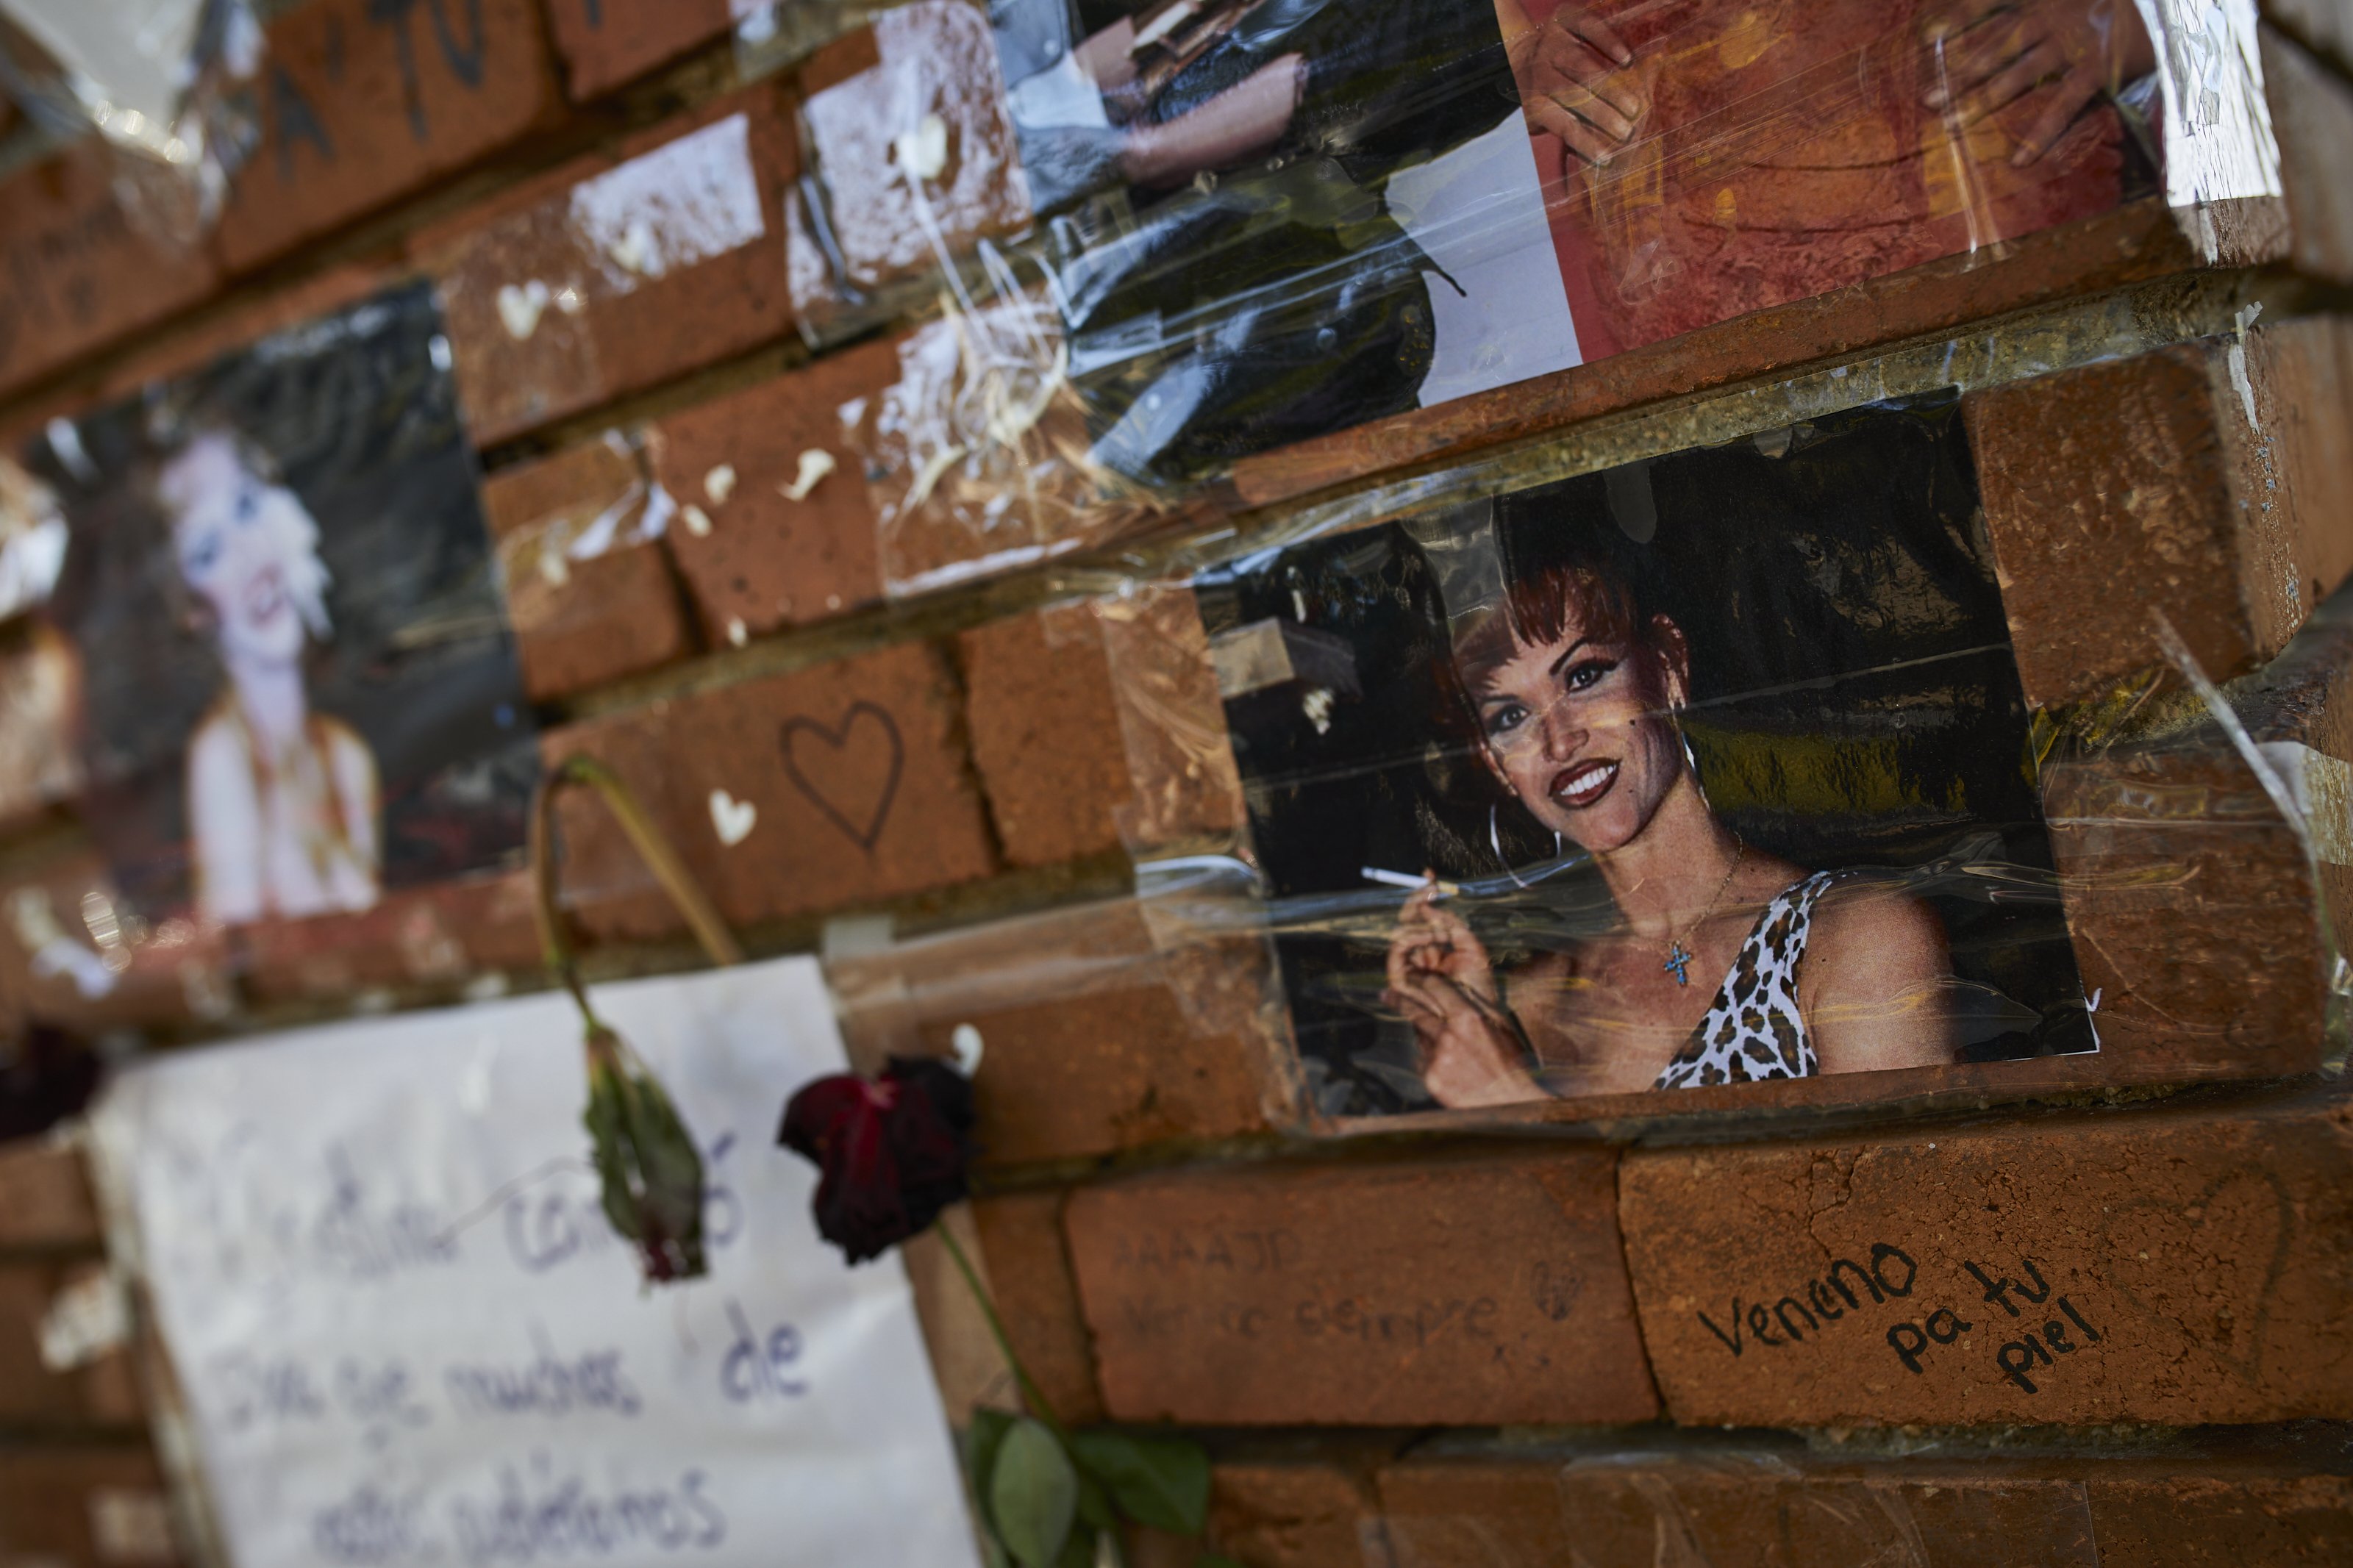 Acercamiento del tributo a "La Veneno" en Madrid. | Fuente: Getty Images